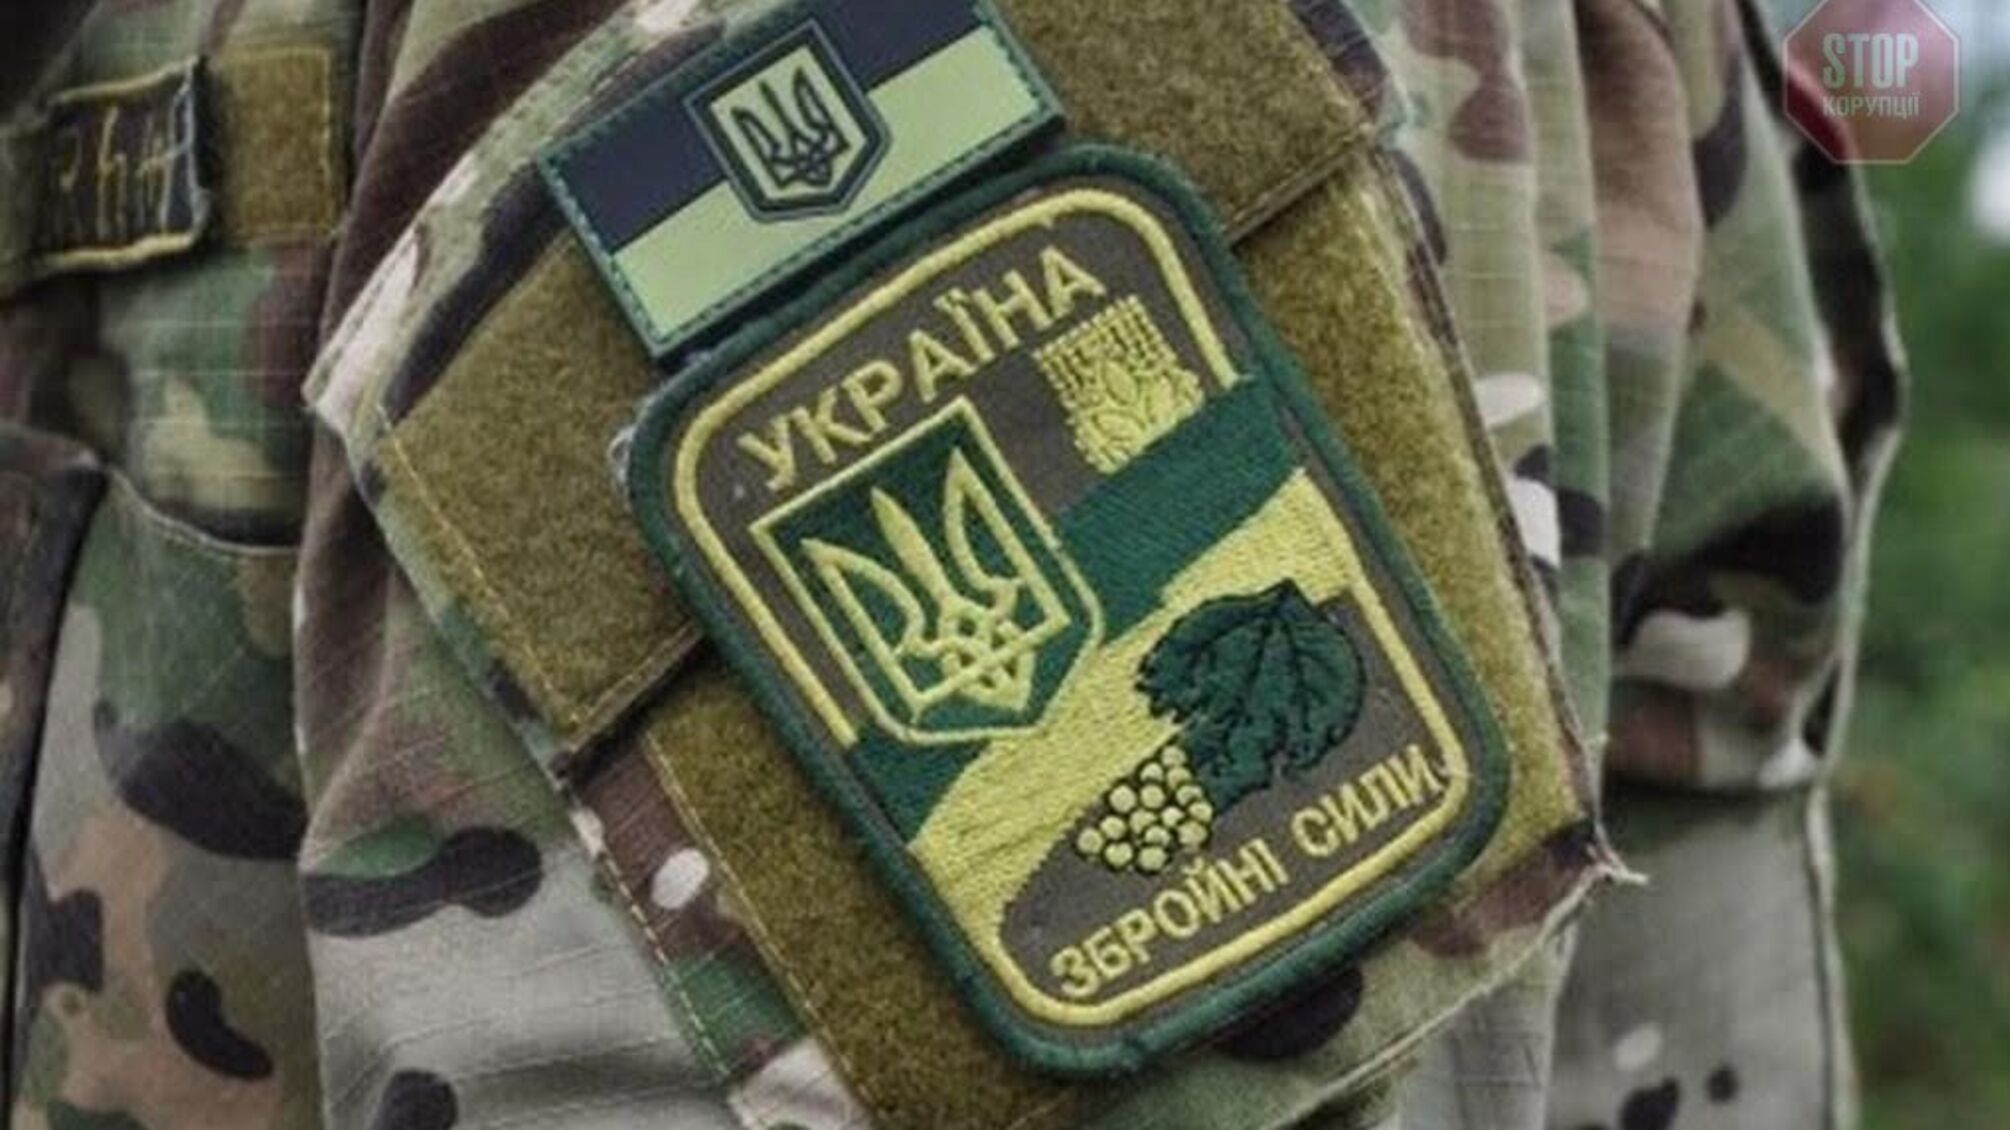 На Донбассе боевики снова открывали огонь, двое раненых военнослужащих